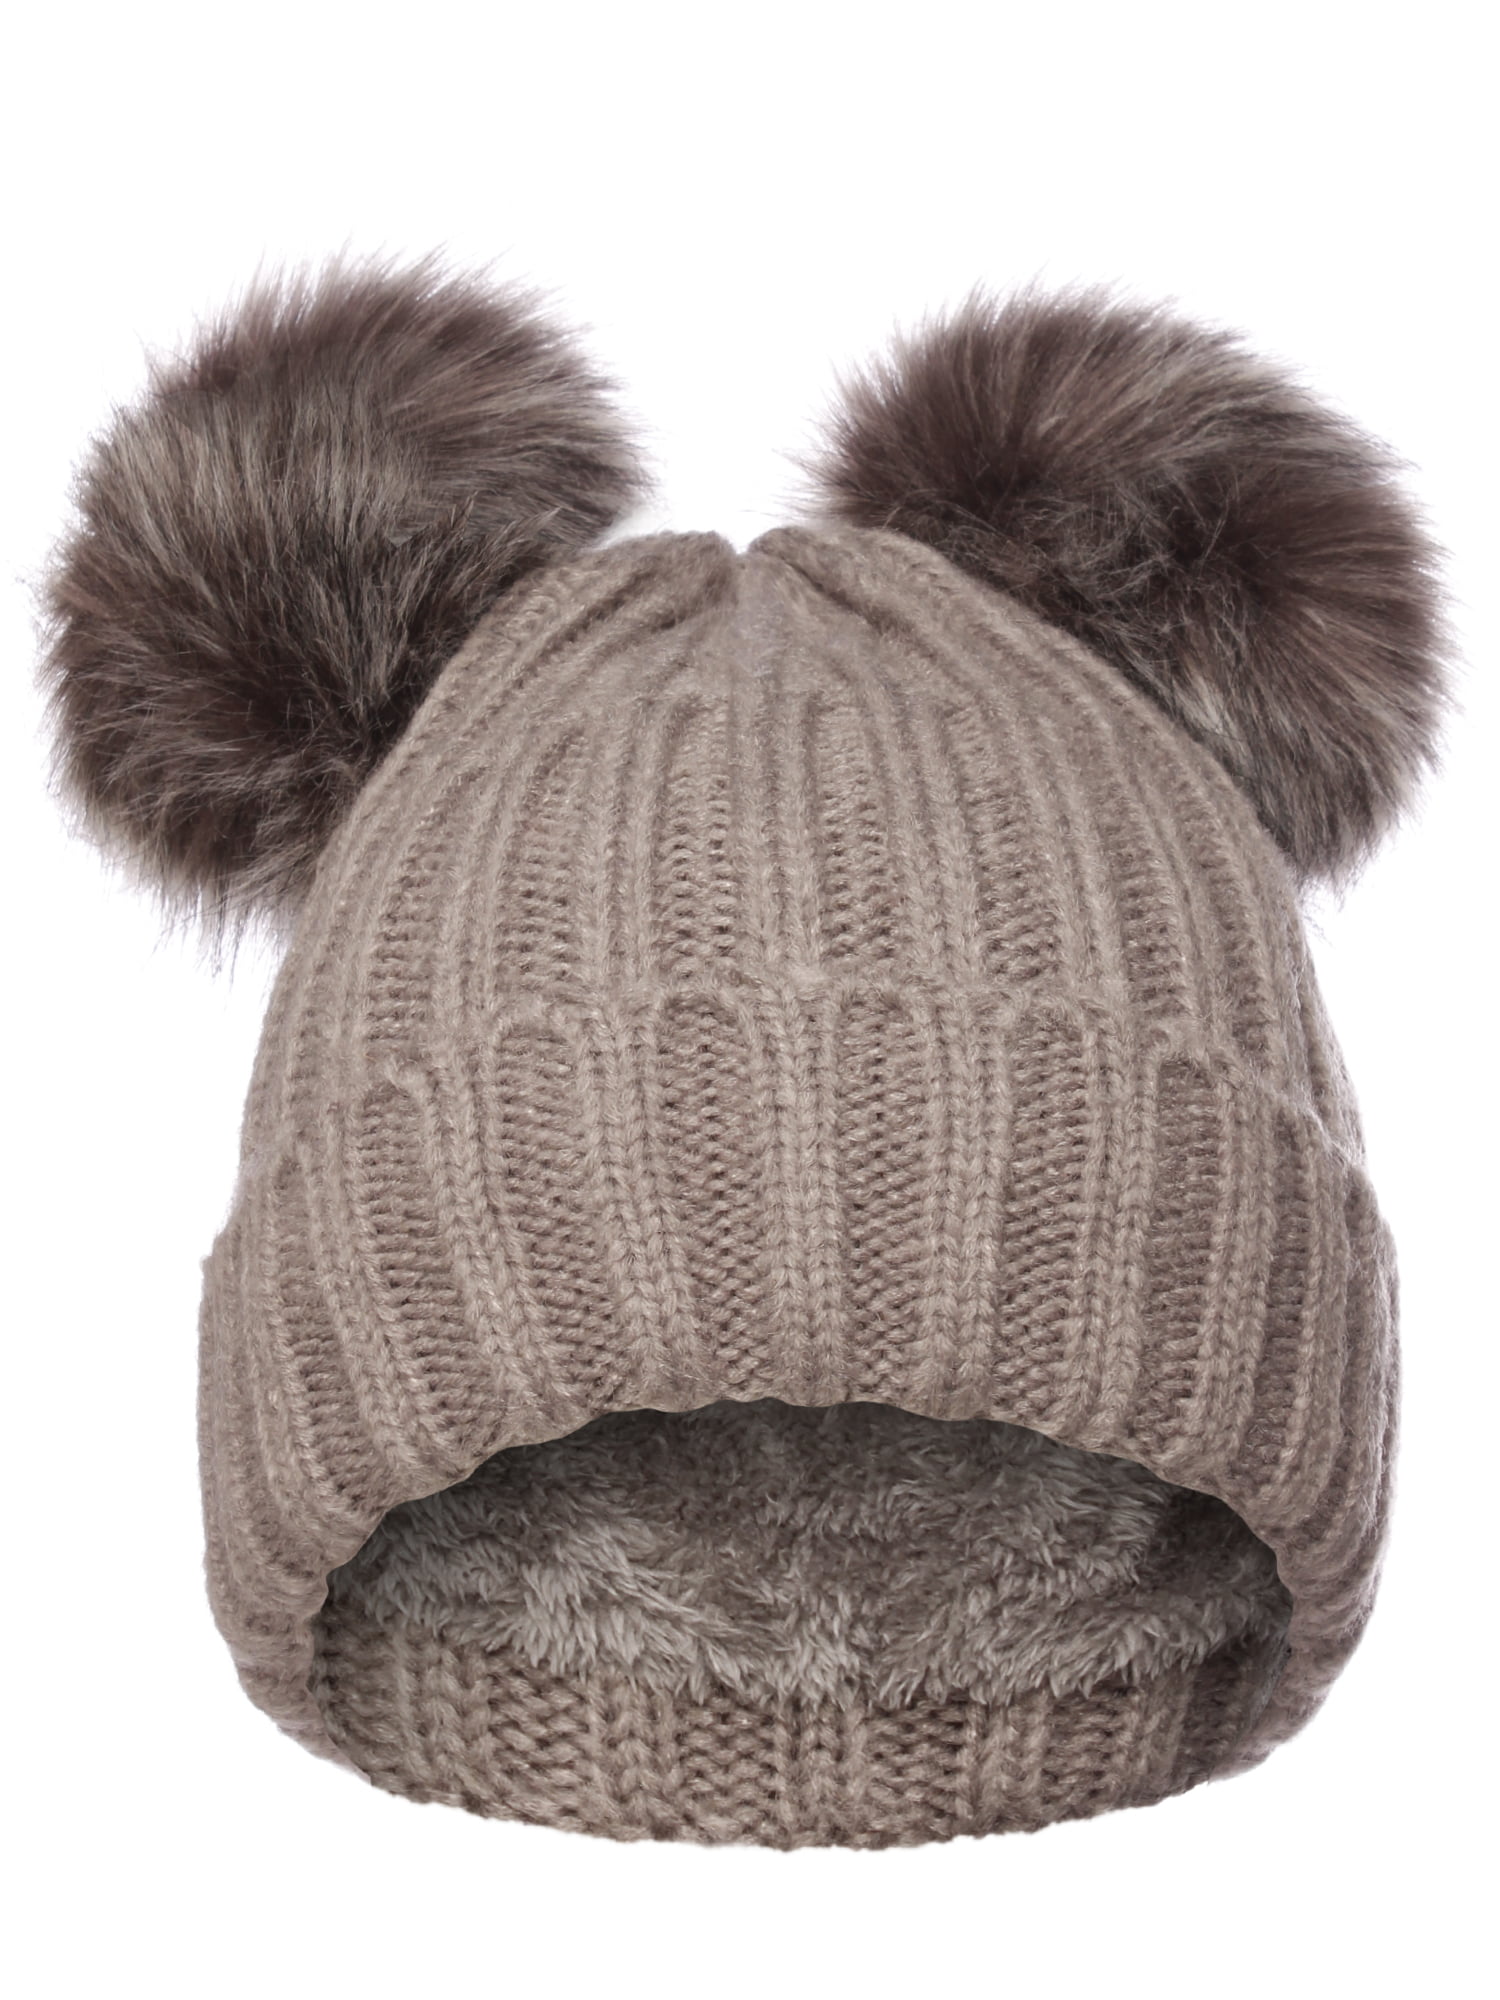 Emmalise Women's Double Pom Pom Beanie Warm Winter Knit Hat Cute Animal ...